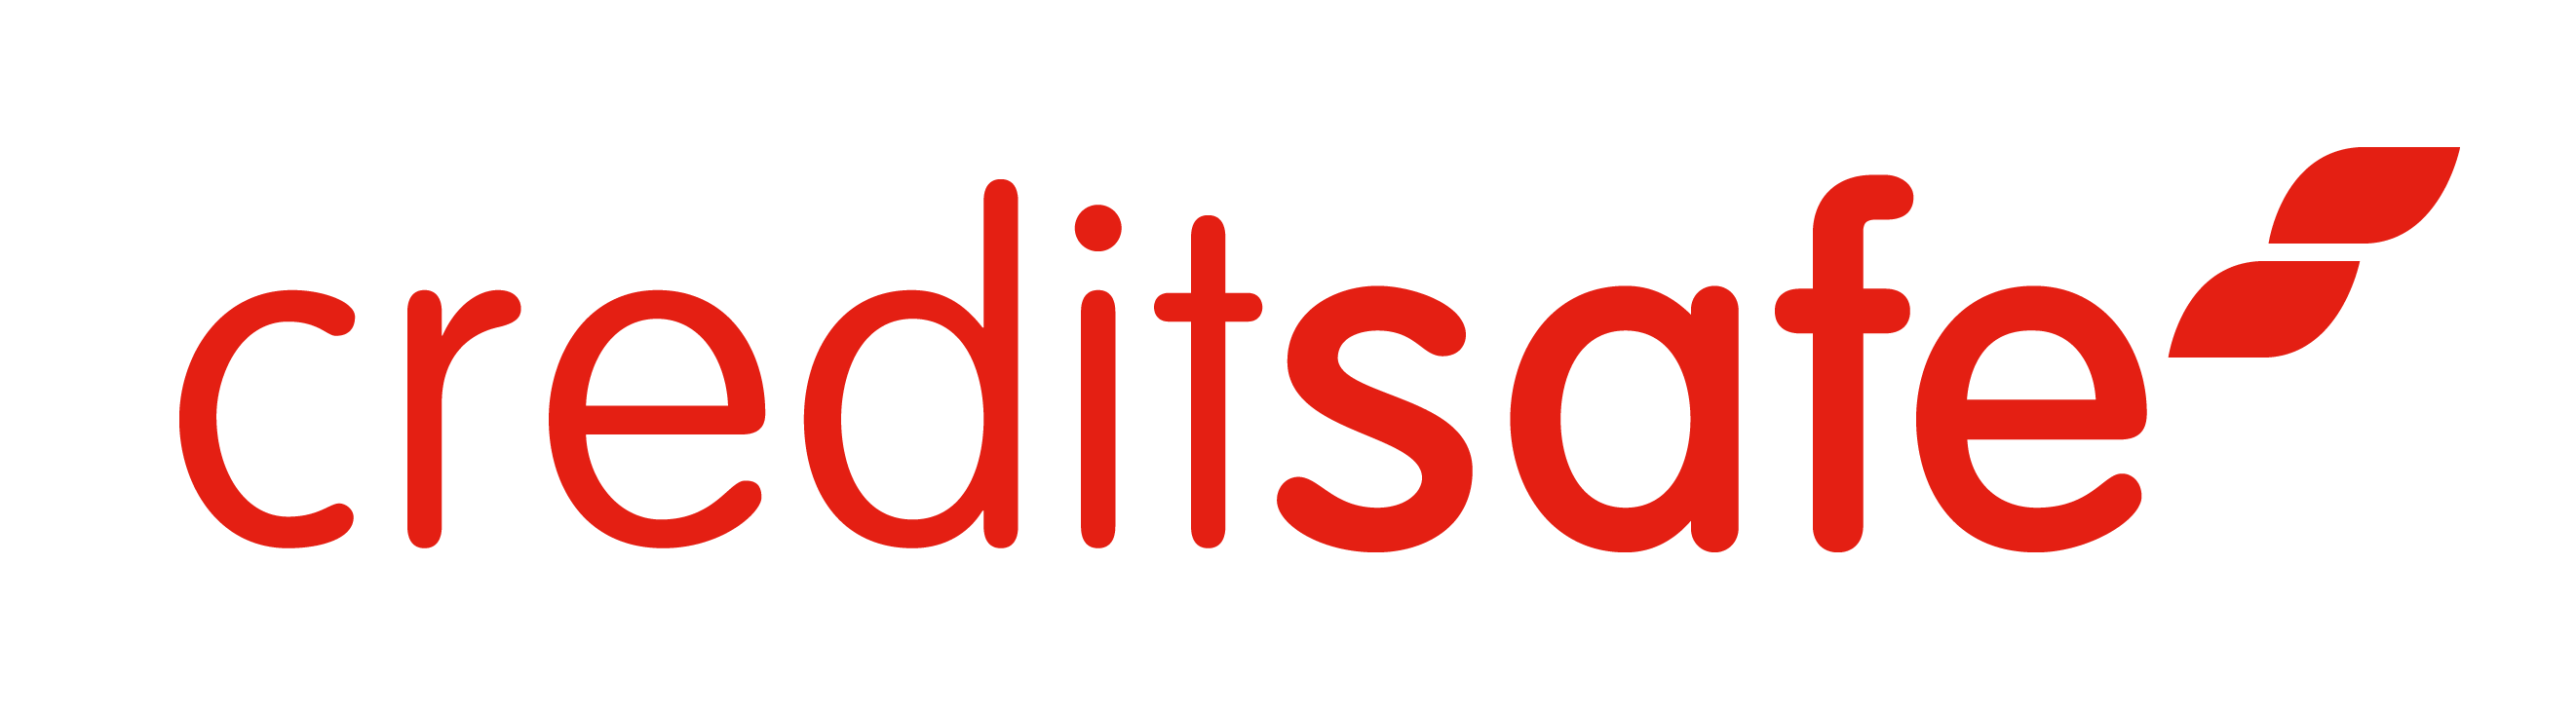 Creditsafe-Logo-1-2